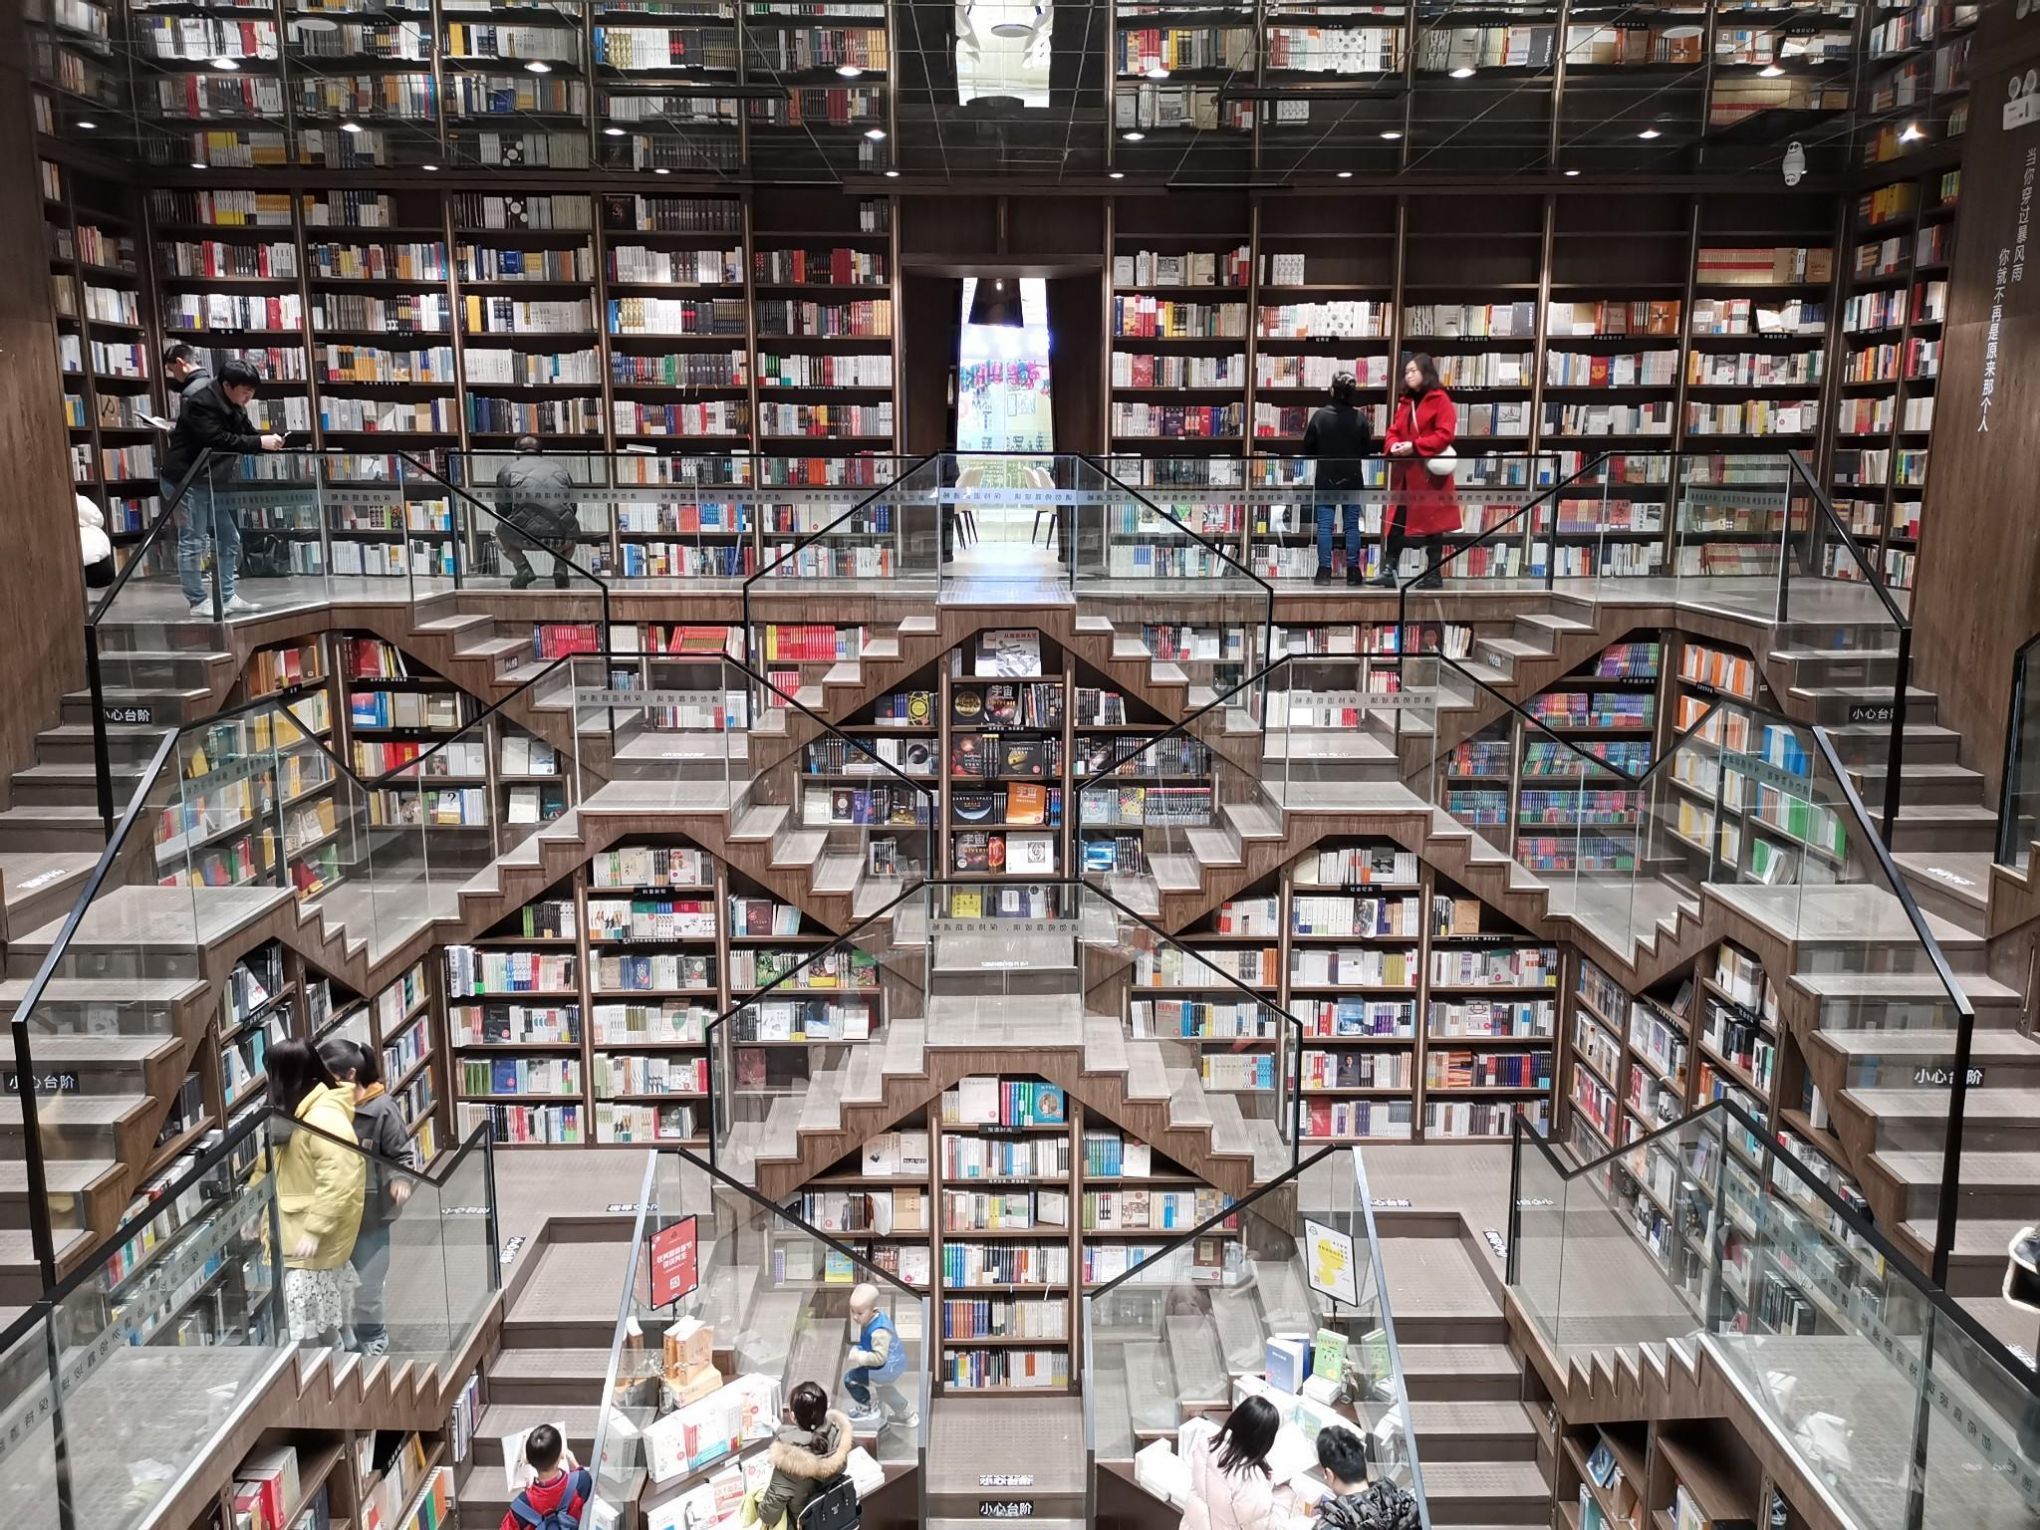 钟书阁是位于九龙坡杨家坪正街的一家书店整个大厅四周被山形台阶层层